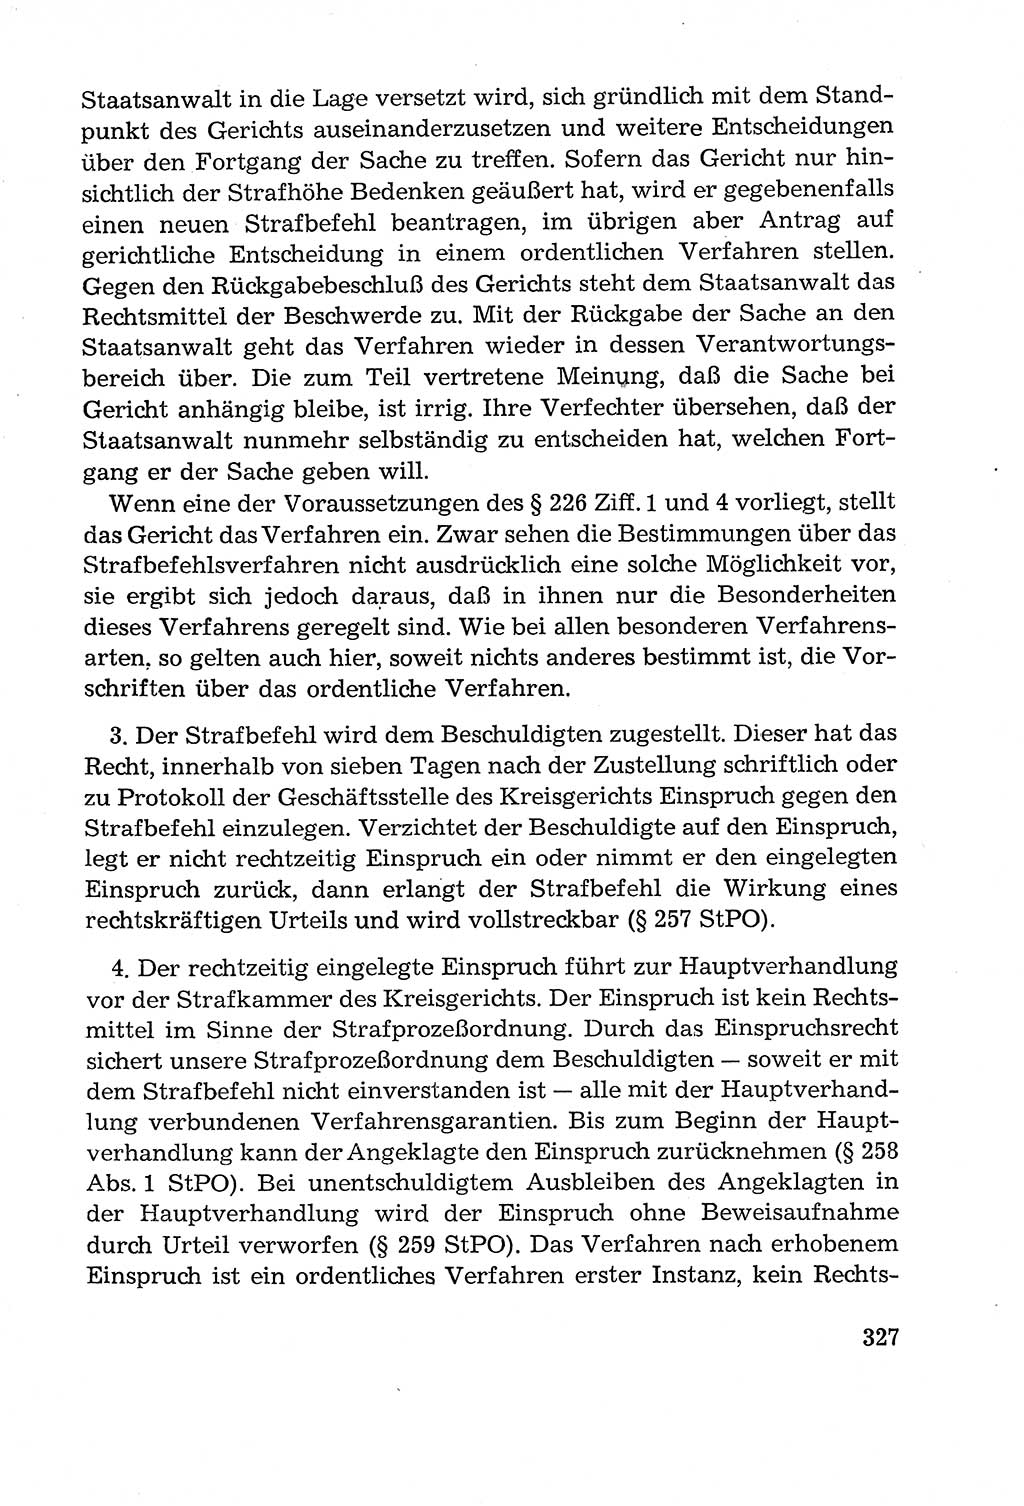 Leitfaden des Strafprozeßrechts der Deutschen Demokratischen Republik (DDR) 1959, Seite 327 (LF StPR DDR 1959, S. 327)